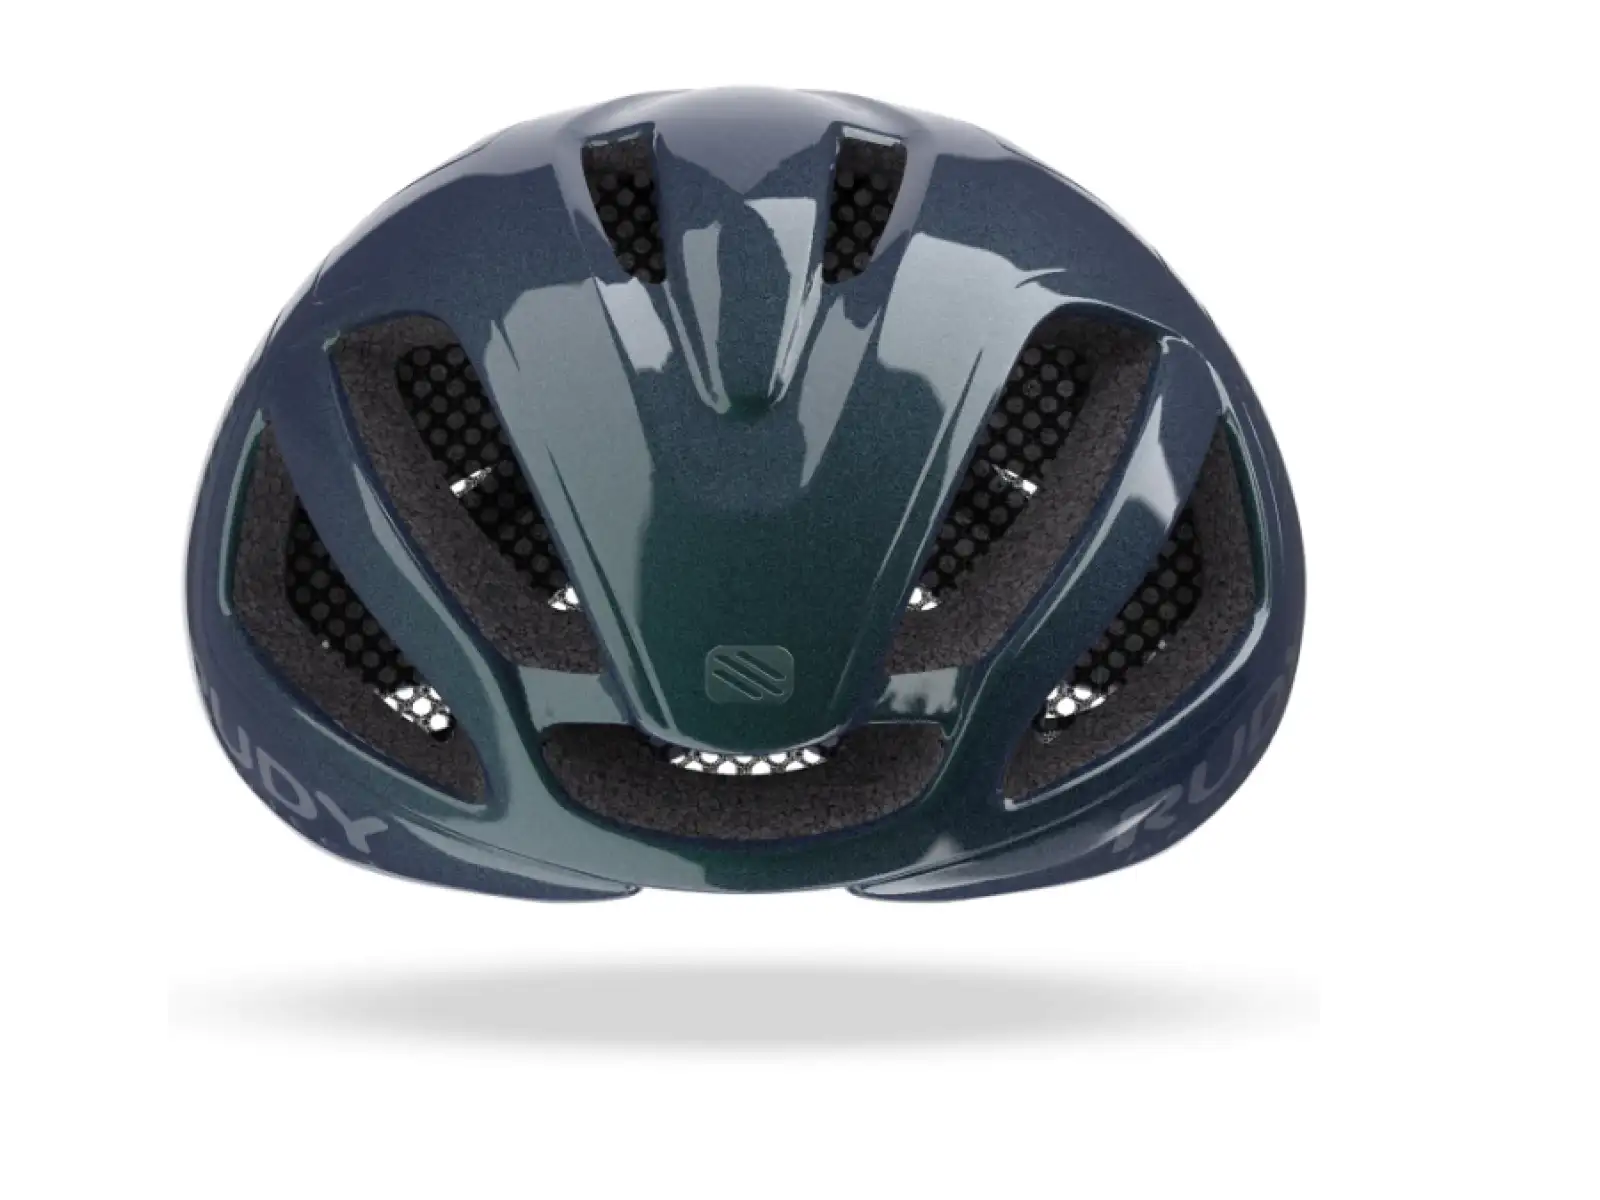 Rudy Project Spectrum IRI silniční helma Blue